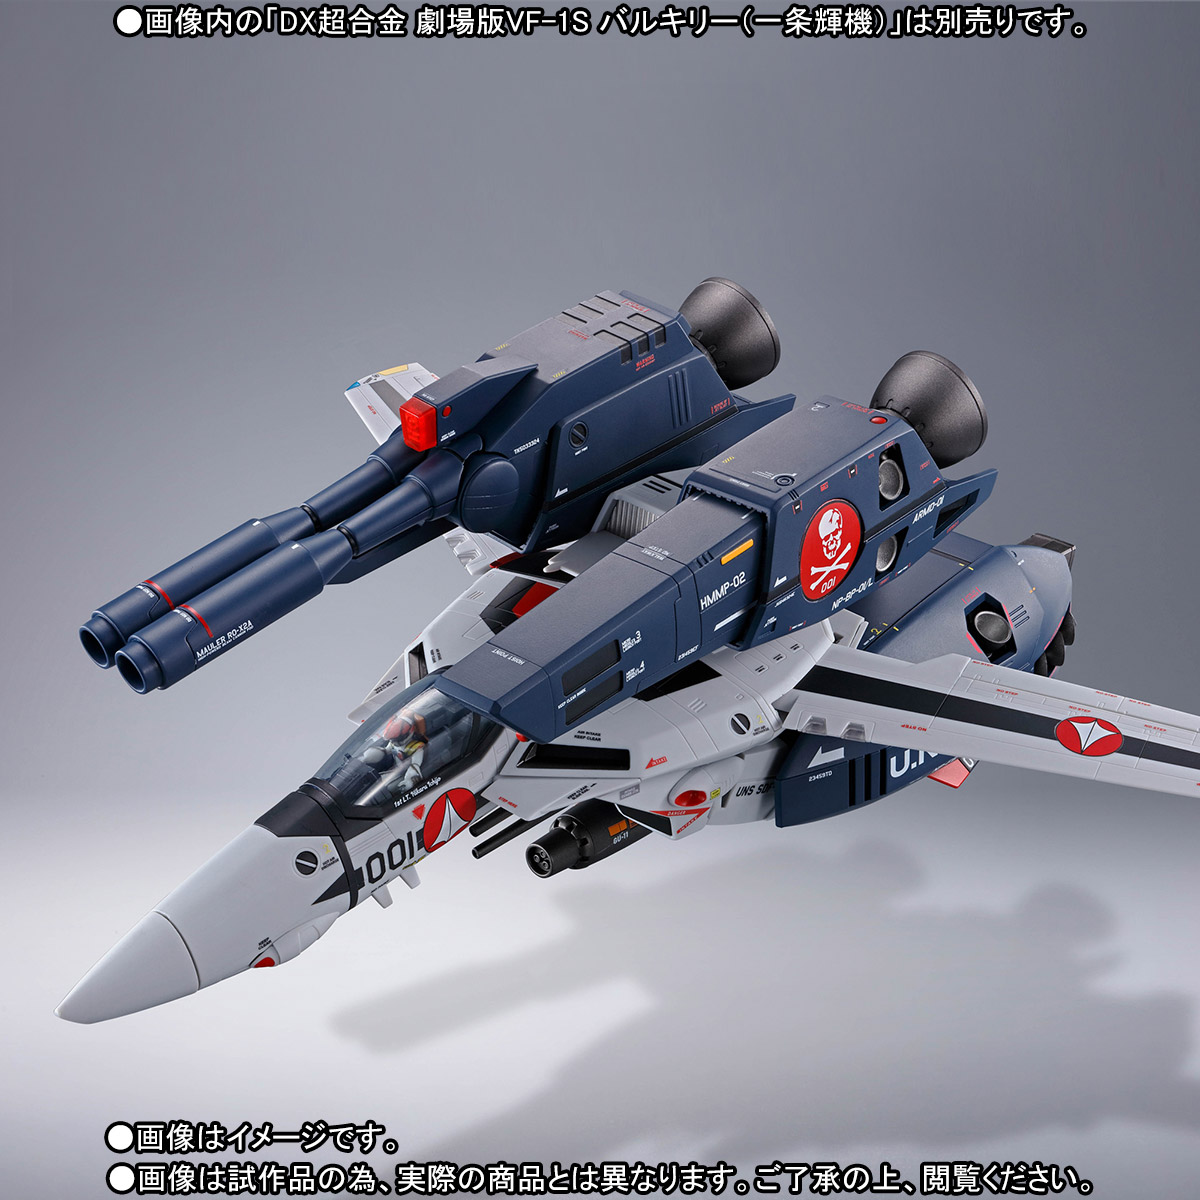 フィギュアDX超合金 劇場版VF-1S(一条機)&劇場版ストライク/スーパーパーツ